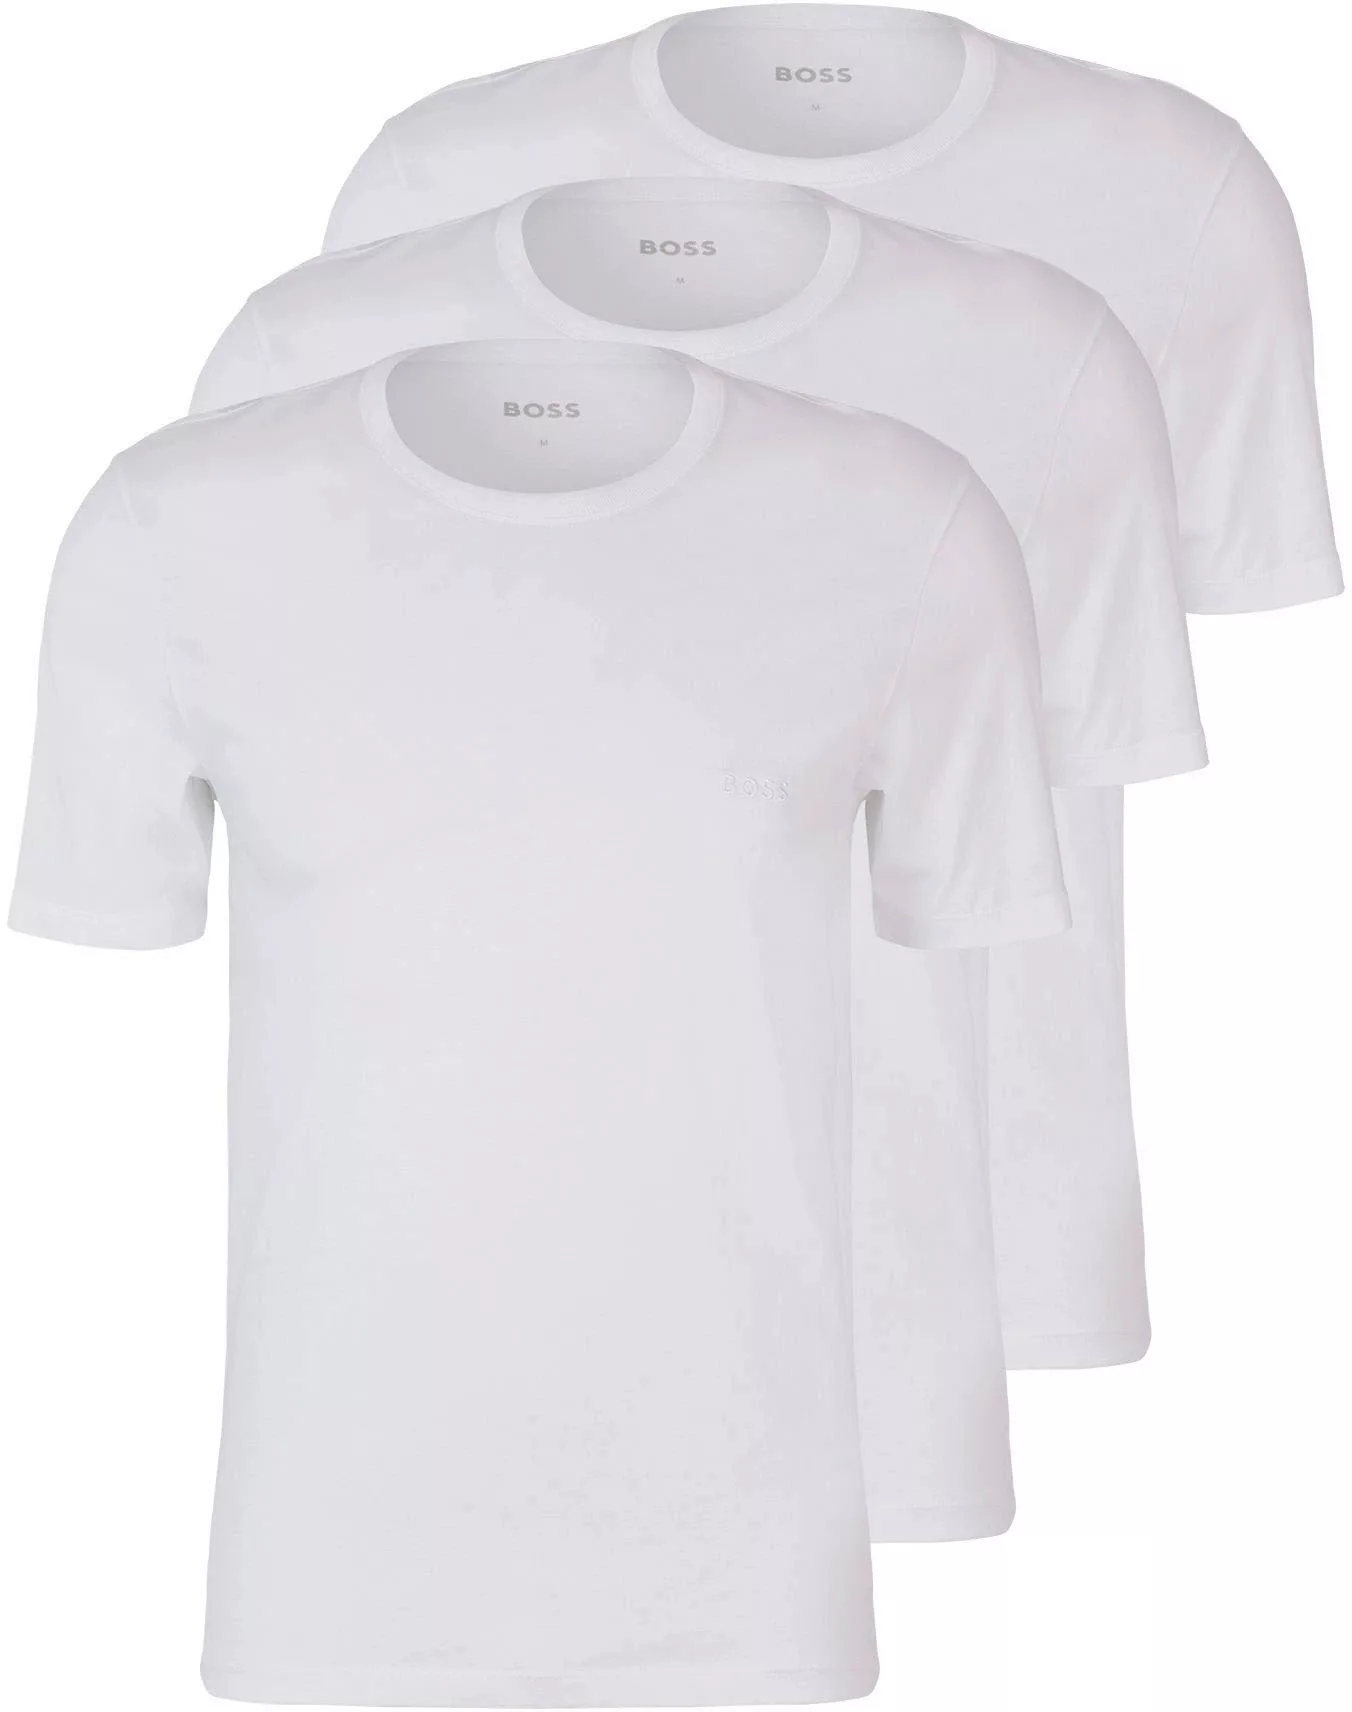 BOSS T-Shirt BOSS Herren T-Shirts 3 Pack,Kurzarm Shirts Crew-Neck, Farbe:We günstig online kaufen